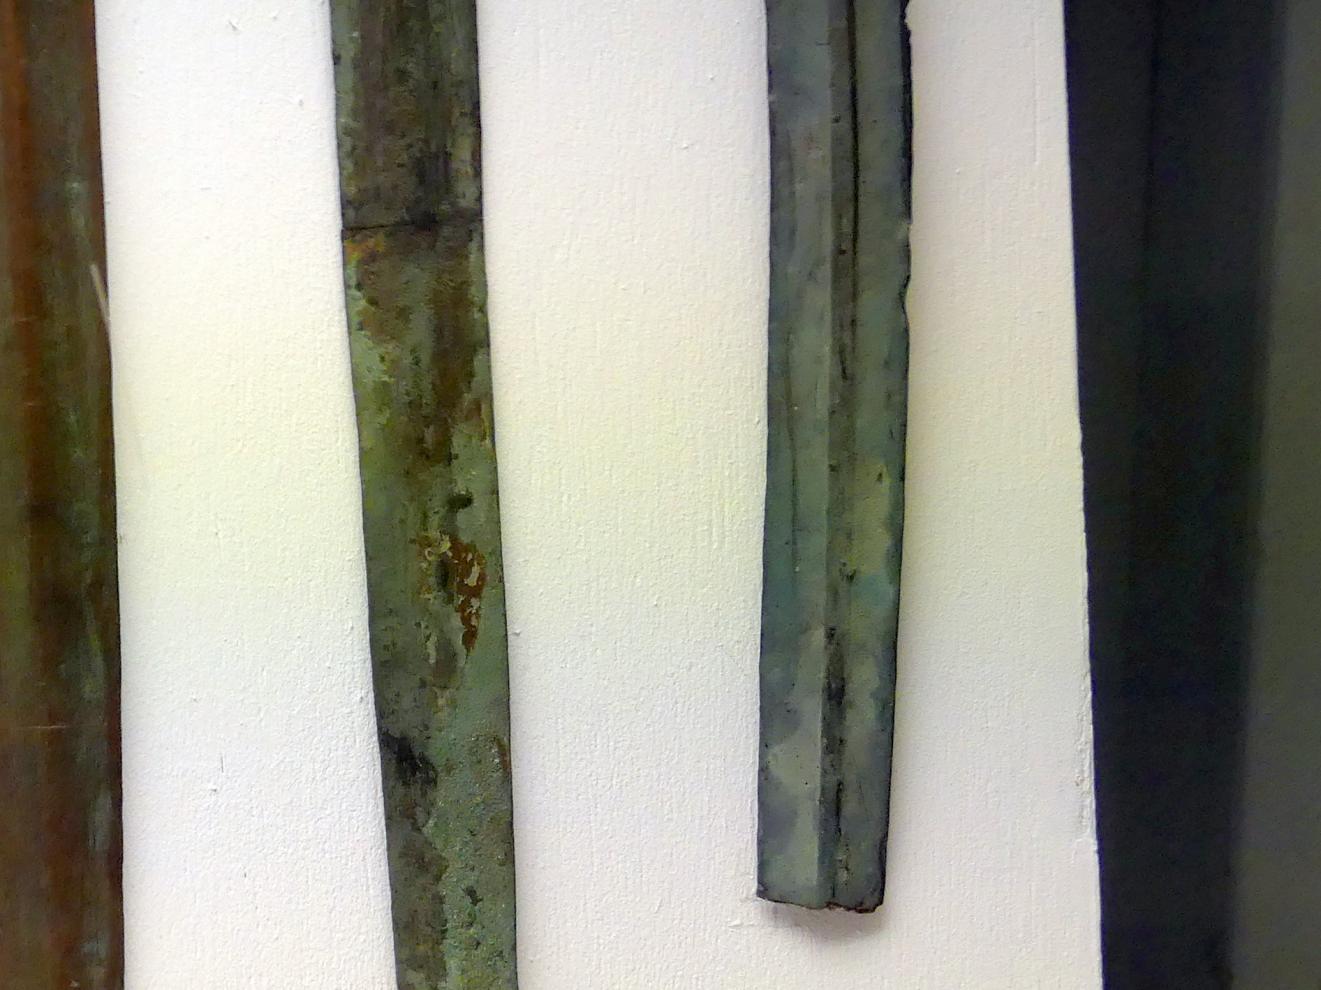 Achtkantschwert (Spitze abgebrochen), Mittlere Bronzezeit C1, 1500 - 1400 v. Chr., Mittlere Bronzezeit C2, Undatiert, Bild 3/4